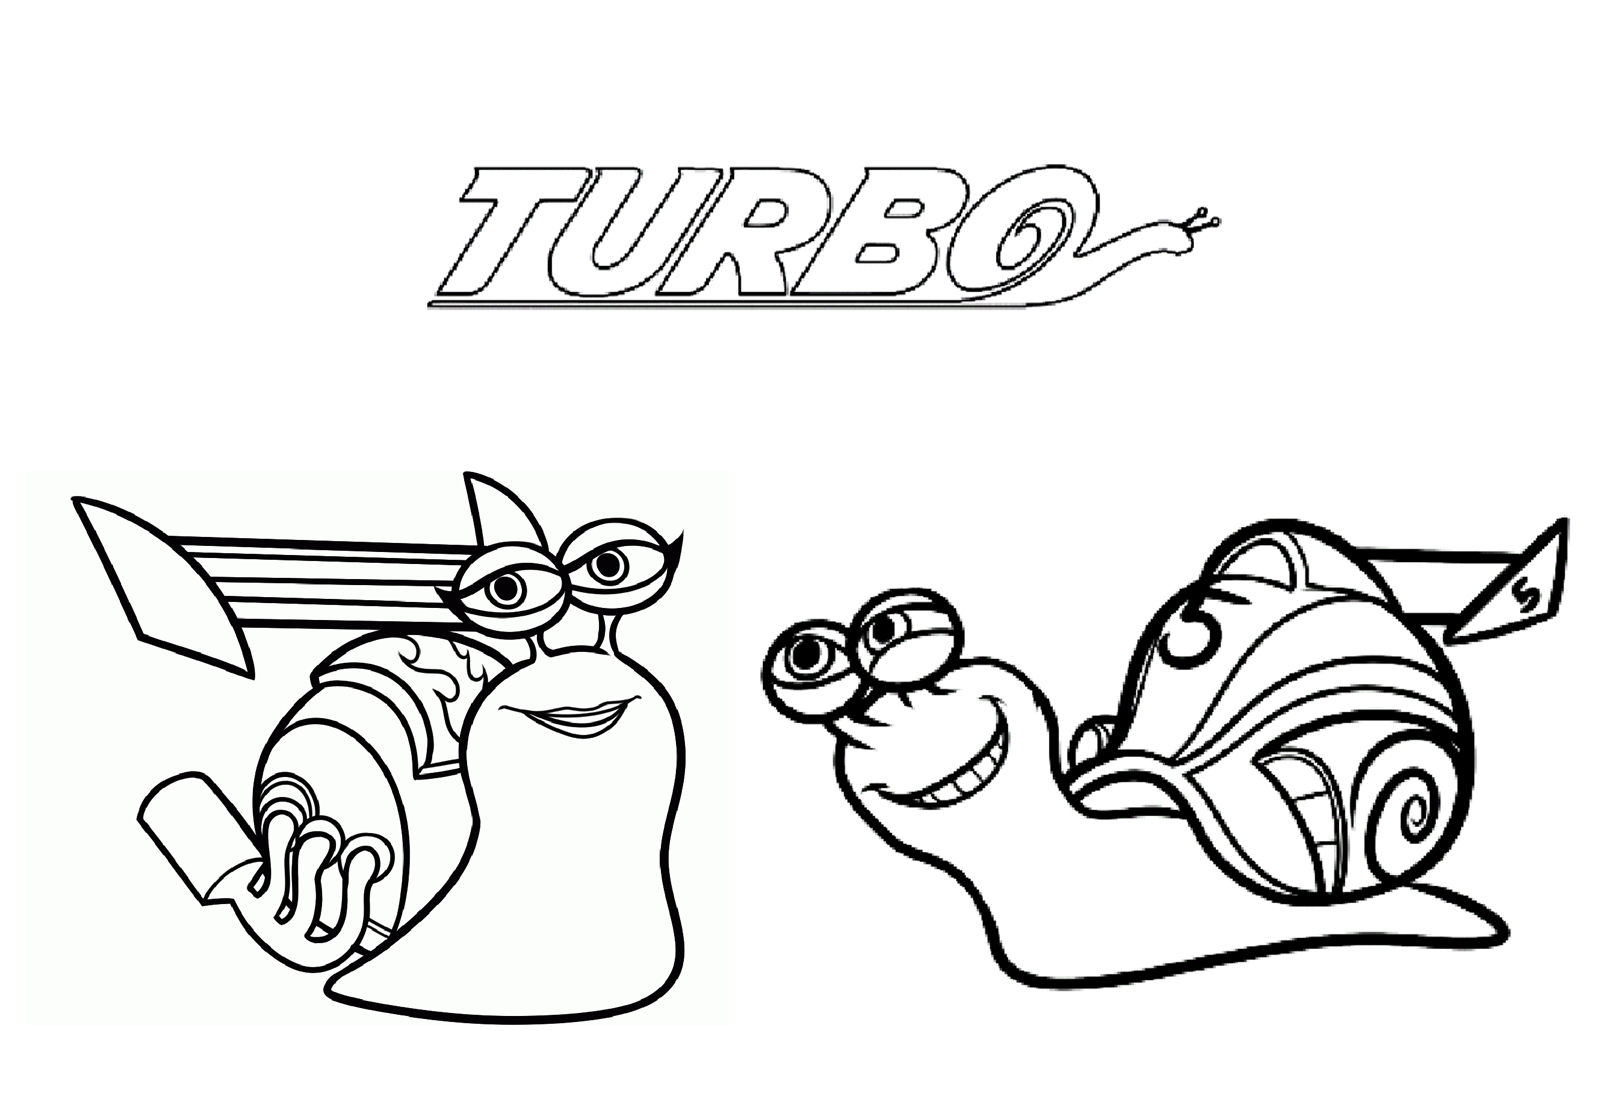 Imagem grátis Turbo com 2 caracóis e o logótipo